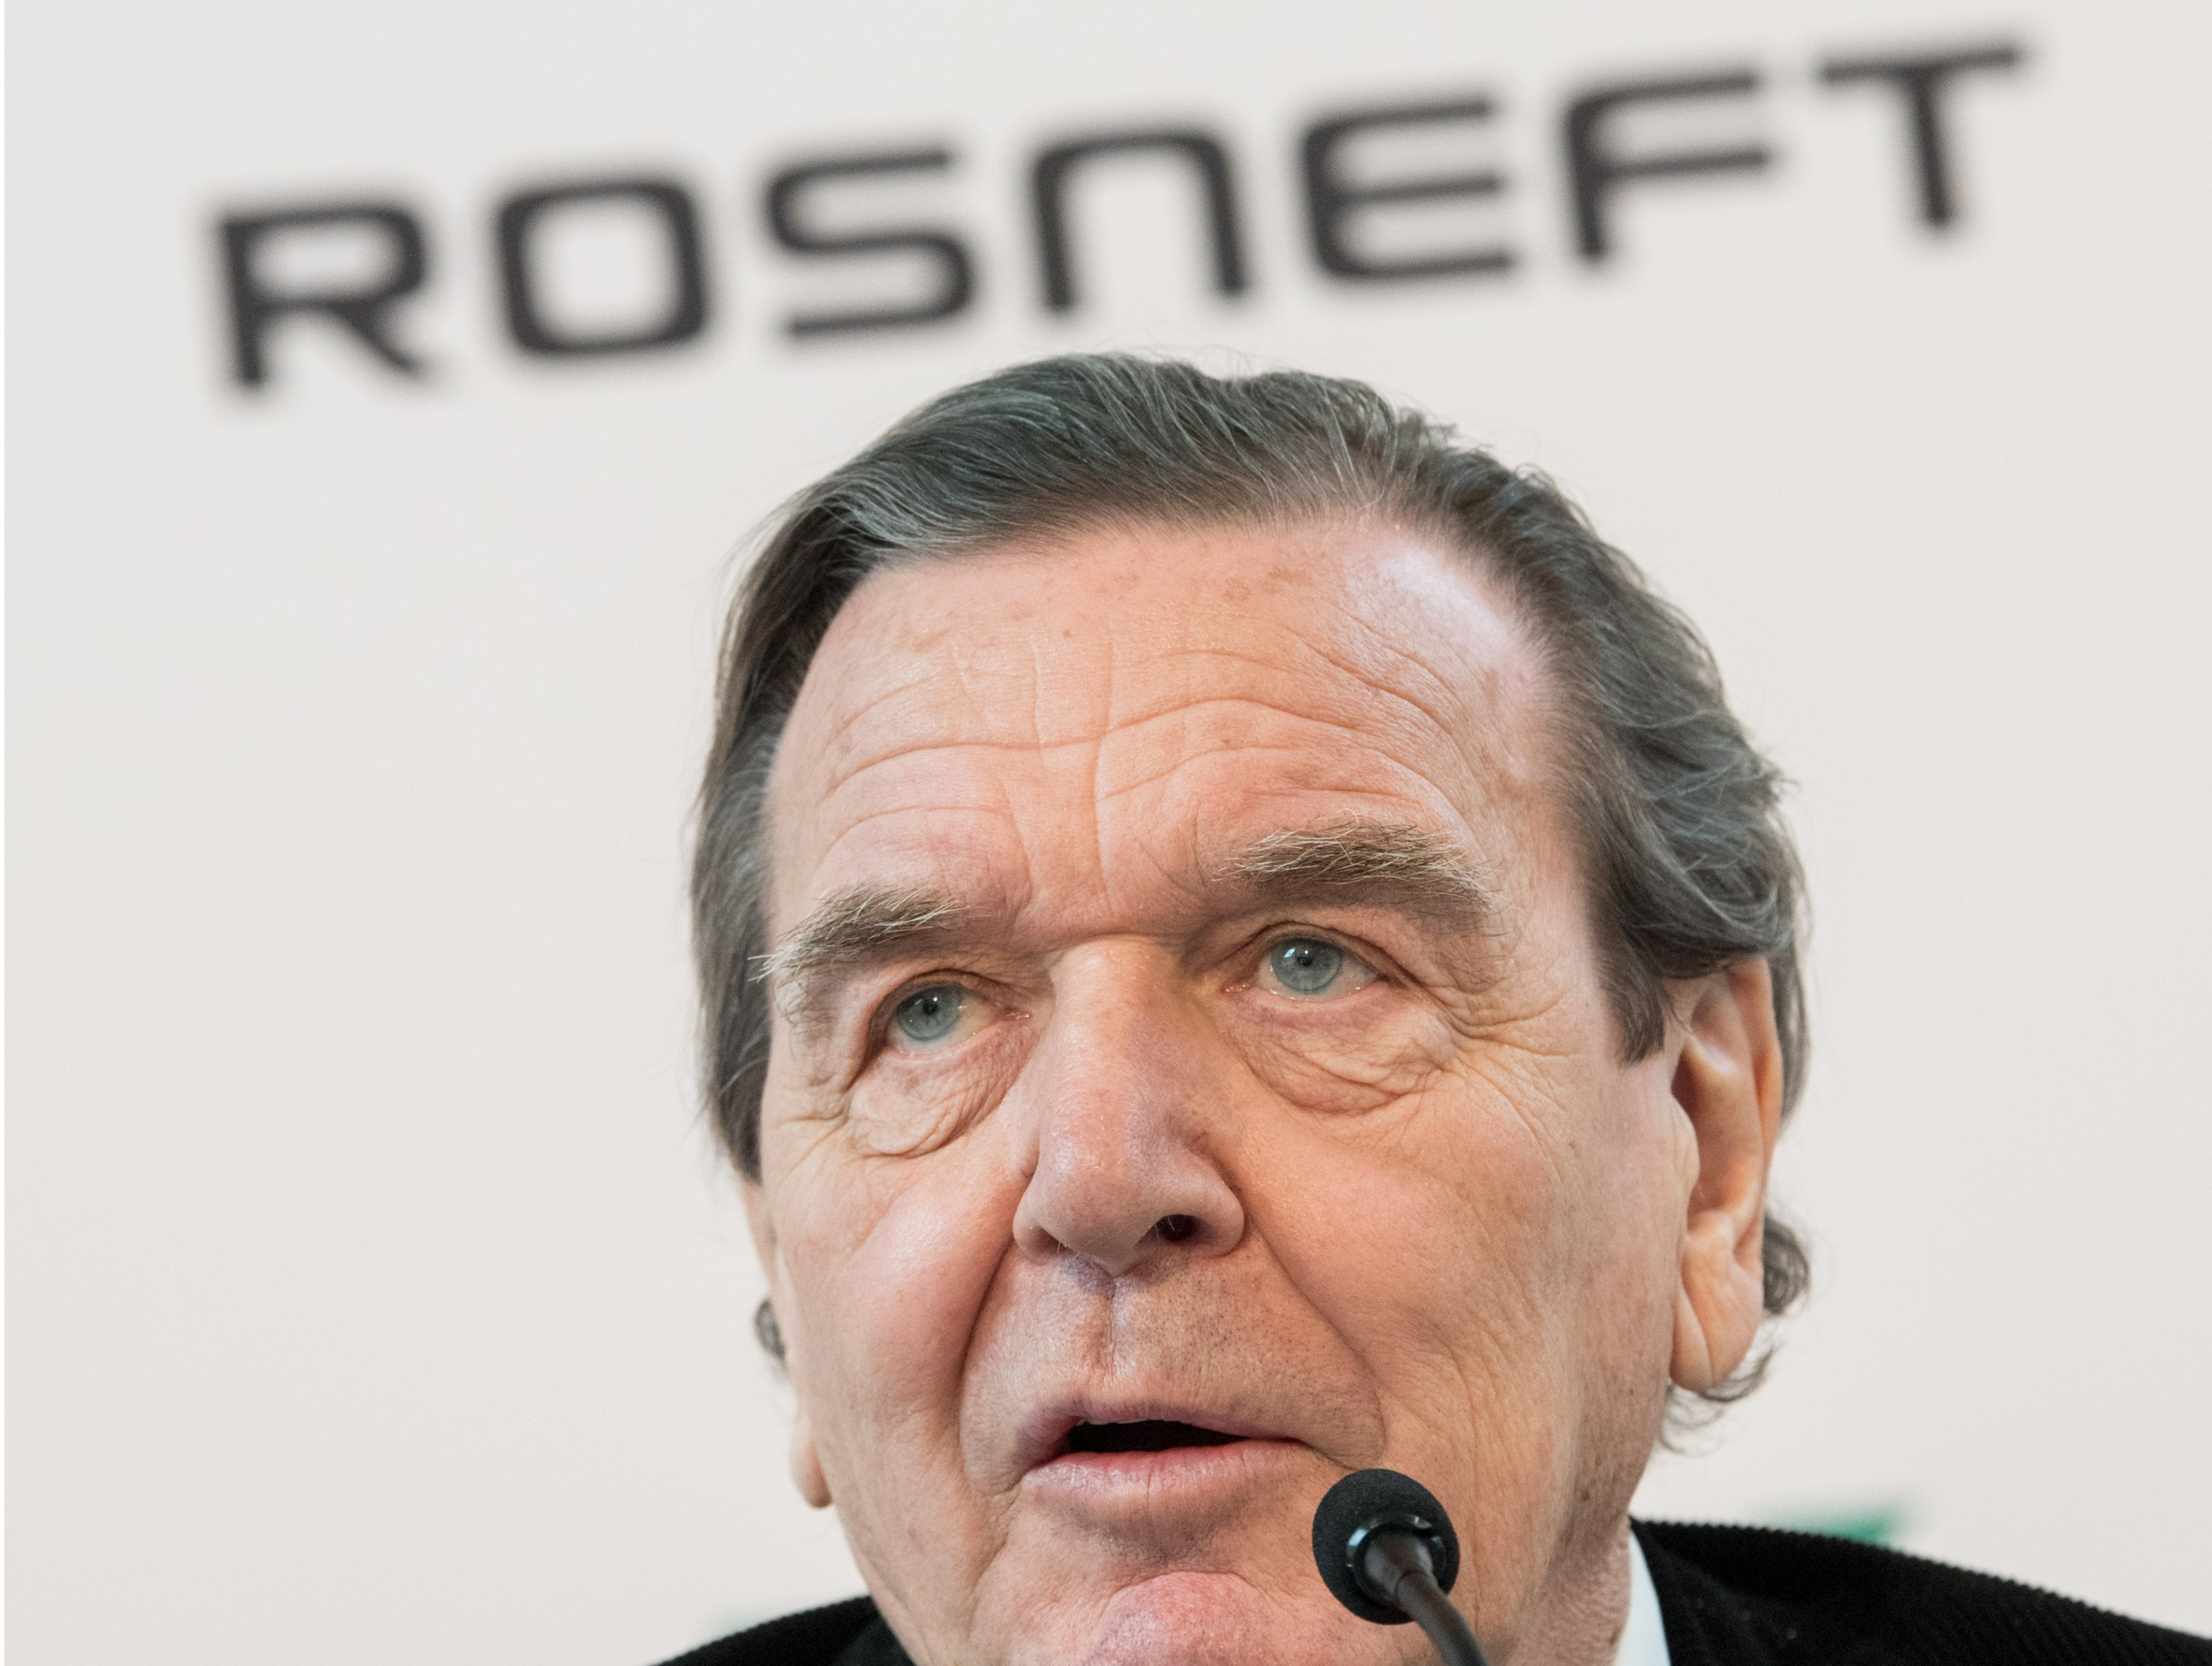 Schröder, missatger de Putin?: "És possible una solució negociada"